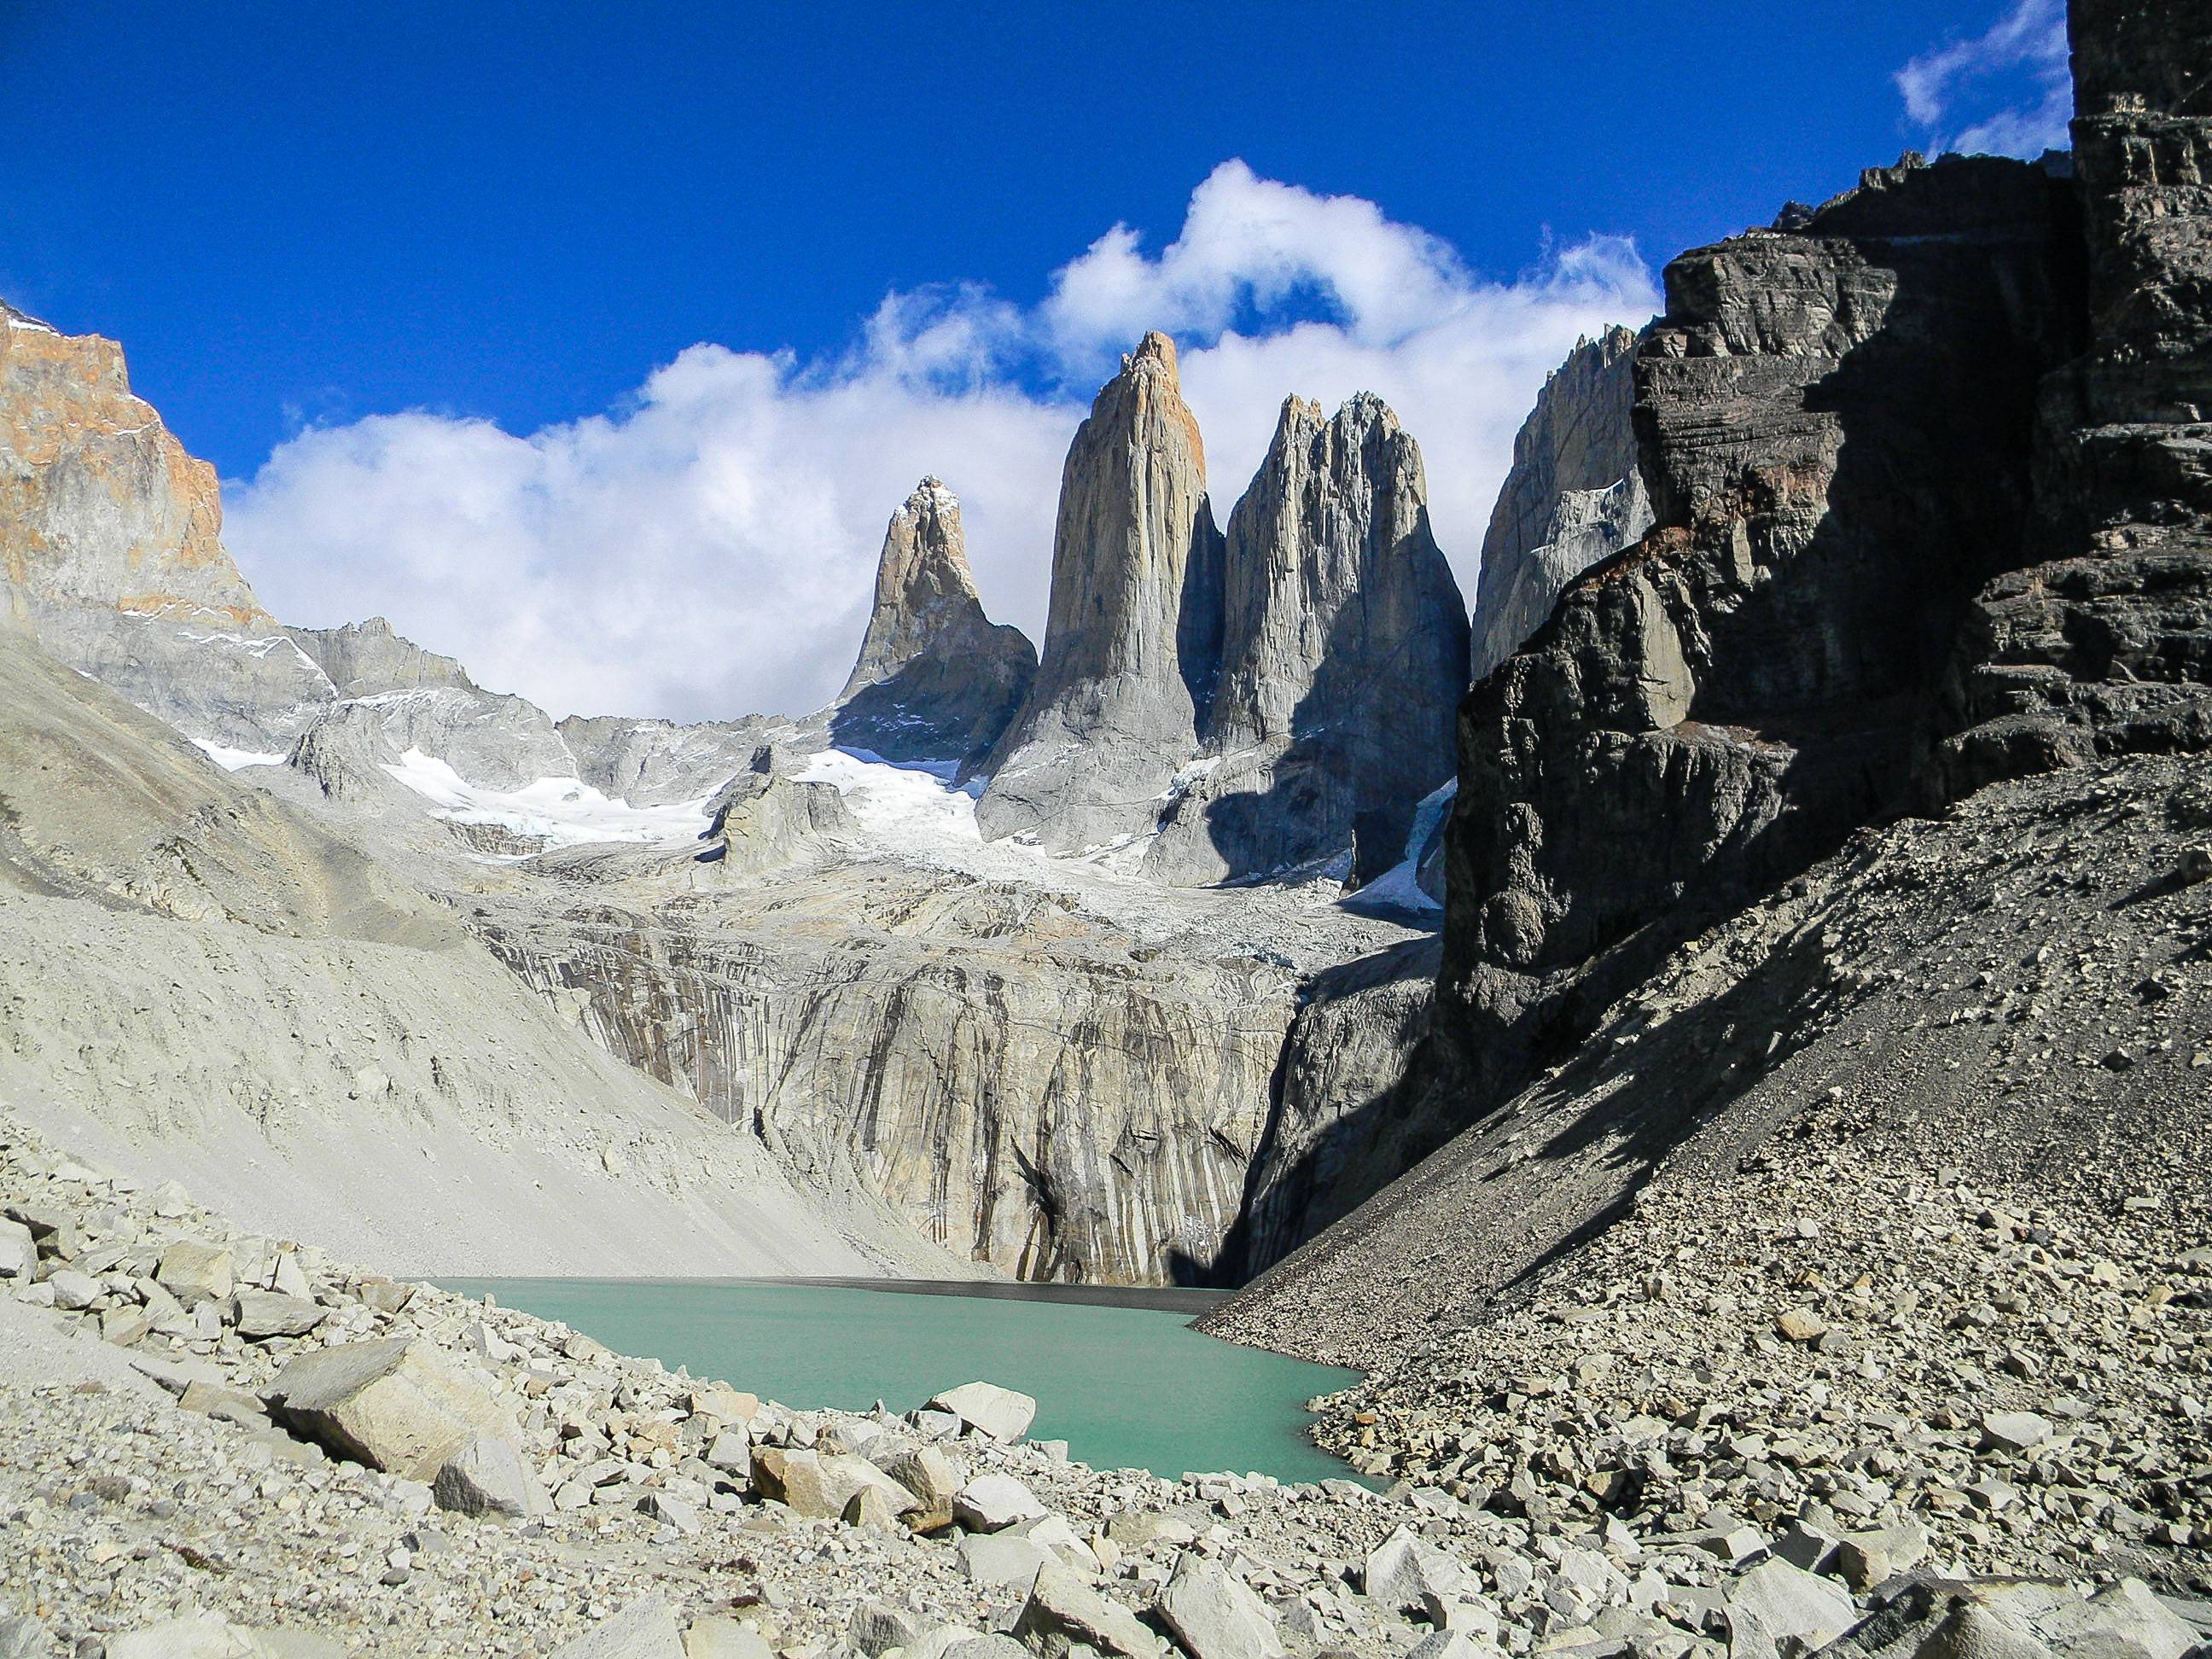 Entdeckung des Torres del Paine Nationalparks